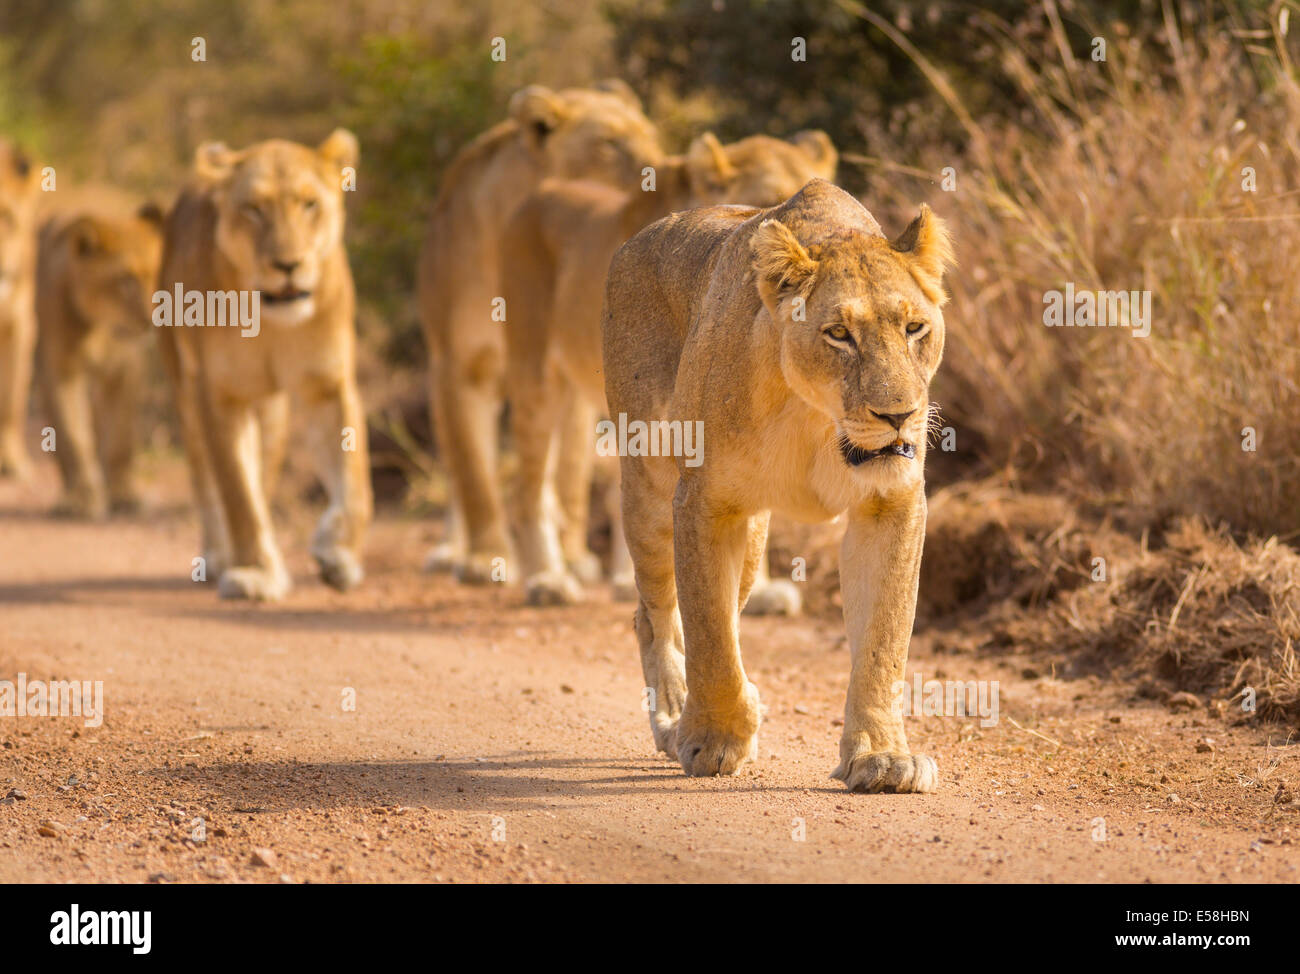 Le parc national Kruger, AFRIQUE DU SUD - la chasse des Lions près de Biyamiti Camp. Panthera leo Banque D'Images